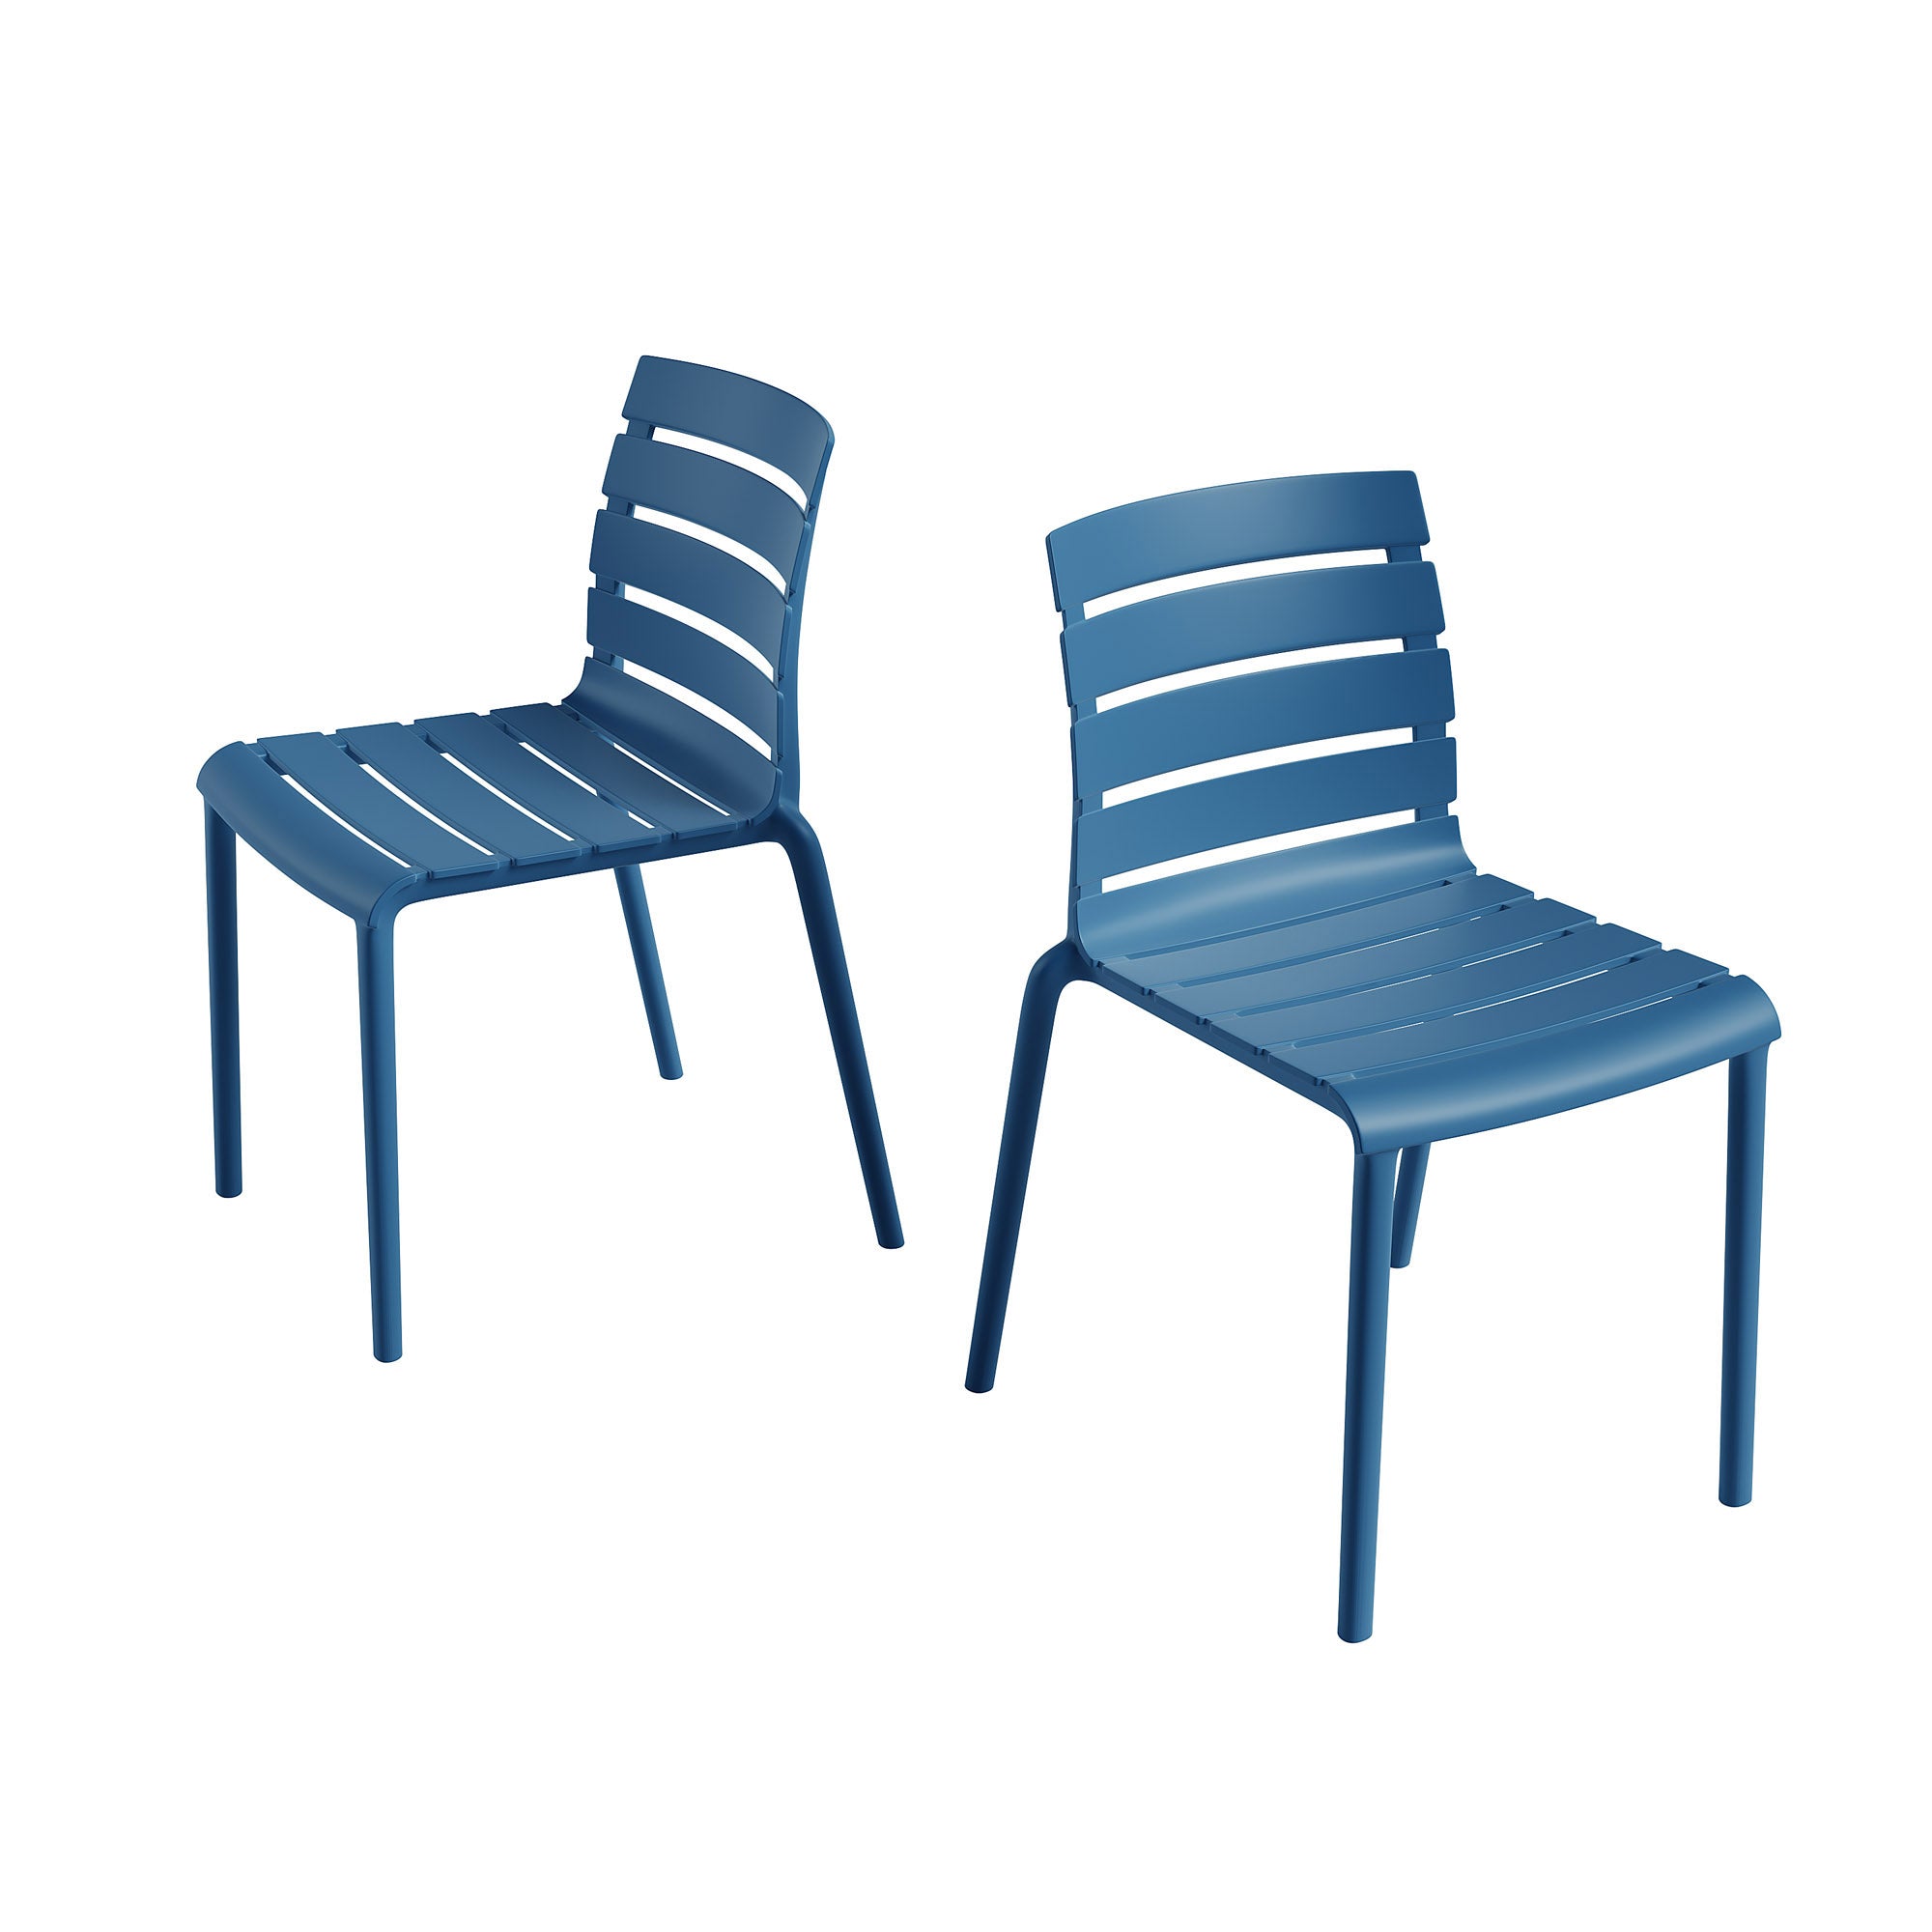 Rylan Indoor and Outdoor Stackable Chair - Berry Blue - Set of 2